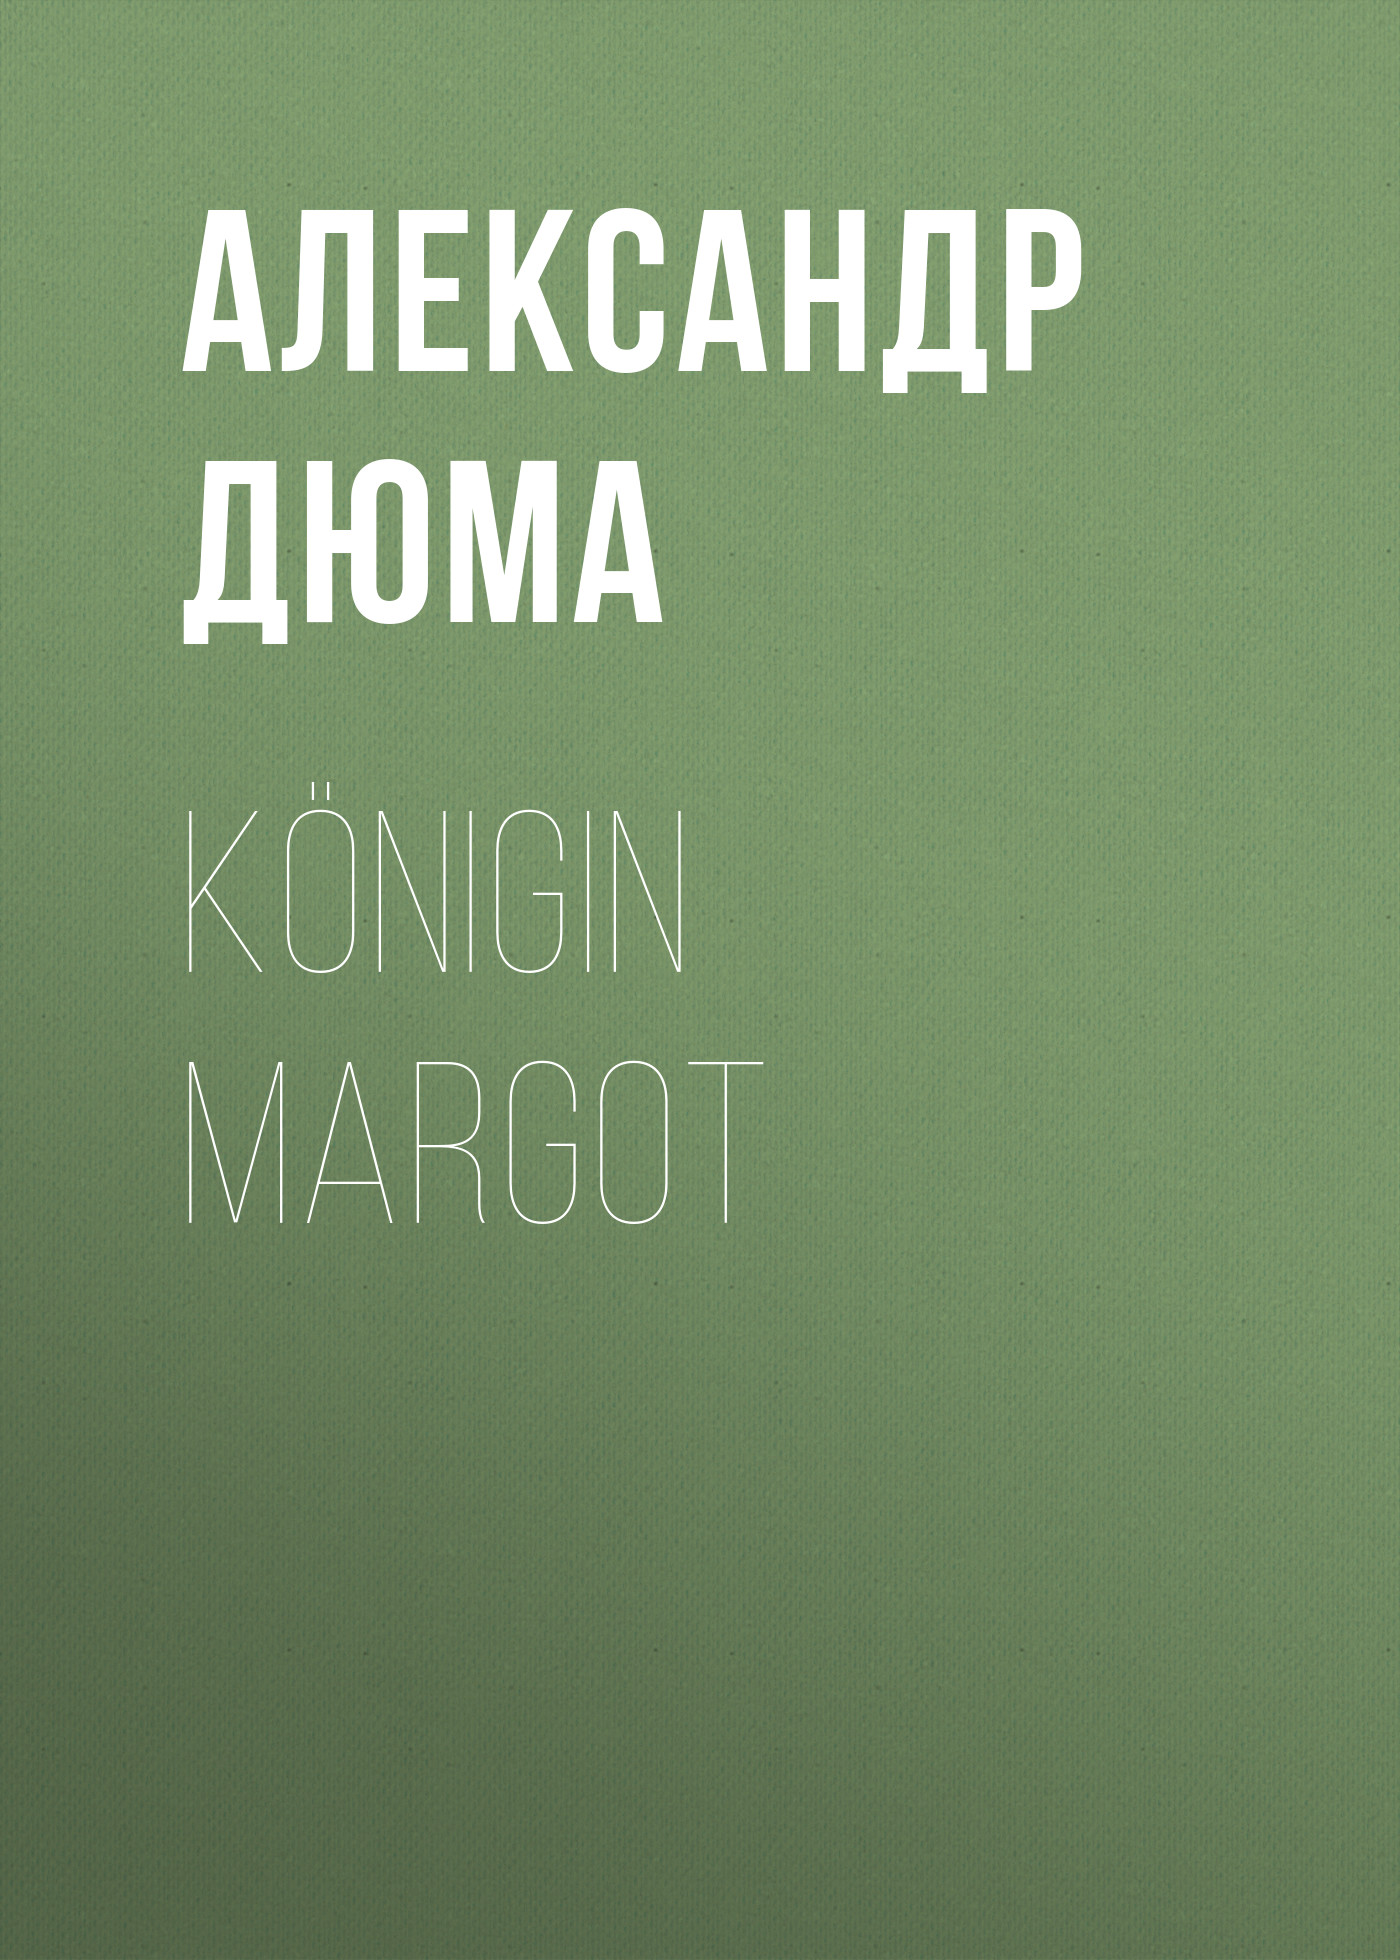 Книга Königin Margot из серии , созданная Alexandre Dumas der Ältere, может относится к жанру Зарубежная классика. Стоимость электронной книги Königin Margot с идентификатором 48632716 составляет 0 руб.